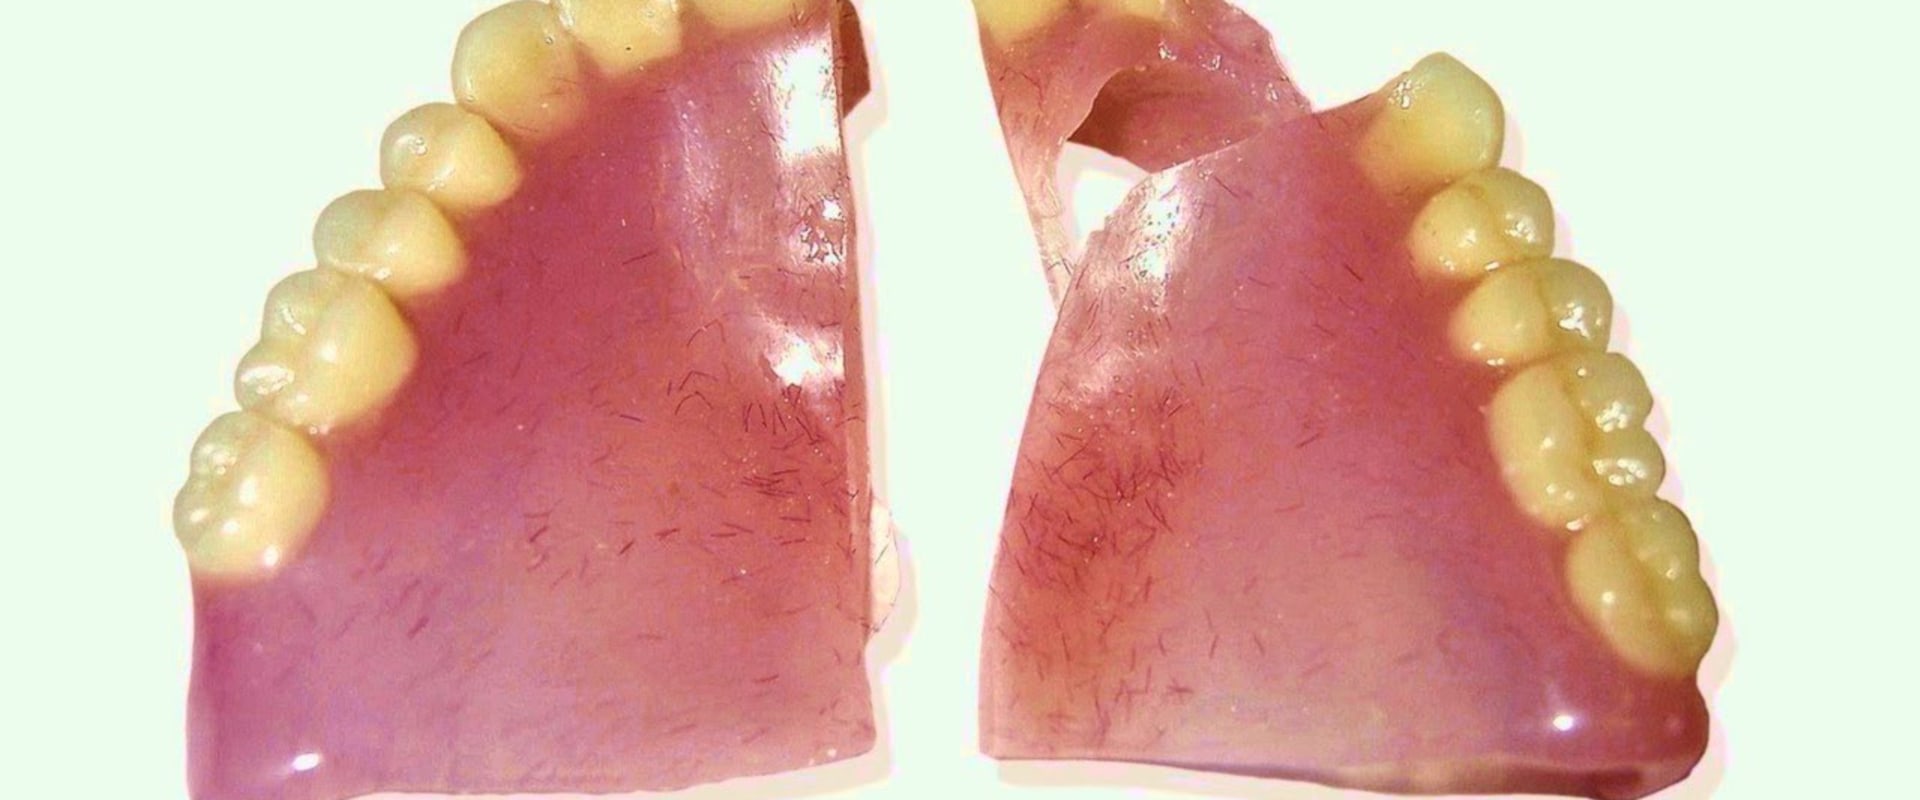 Can Broken Dentures Be Glued Back Together?